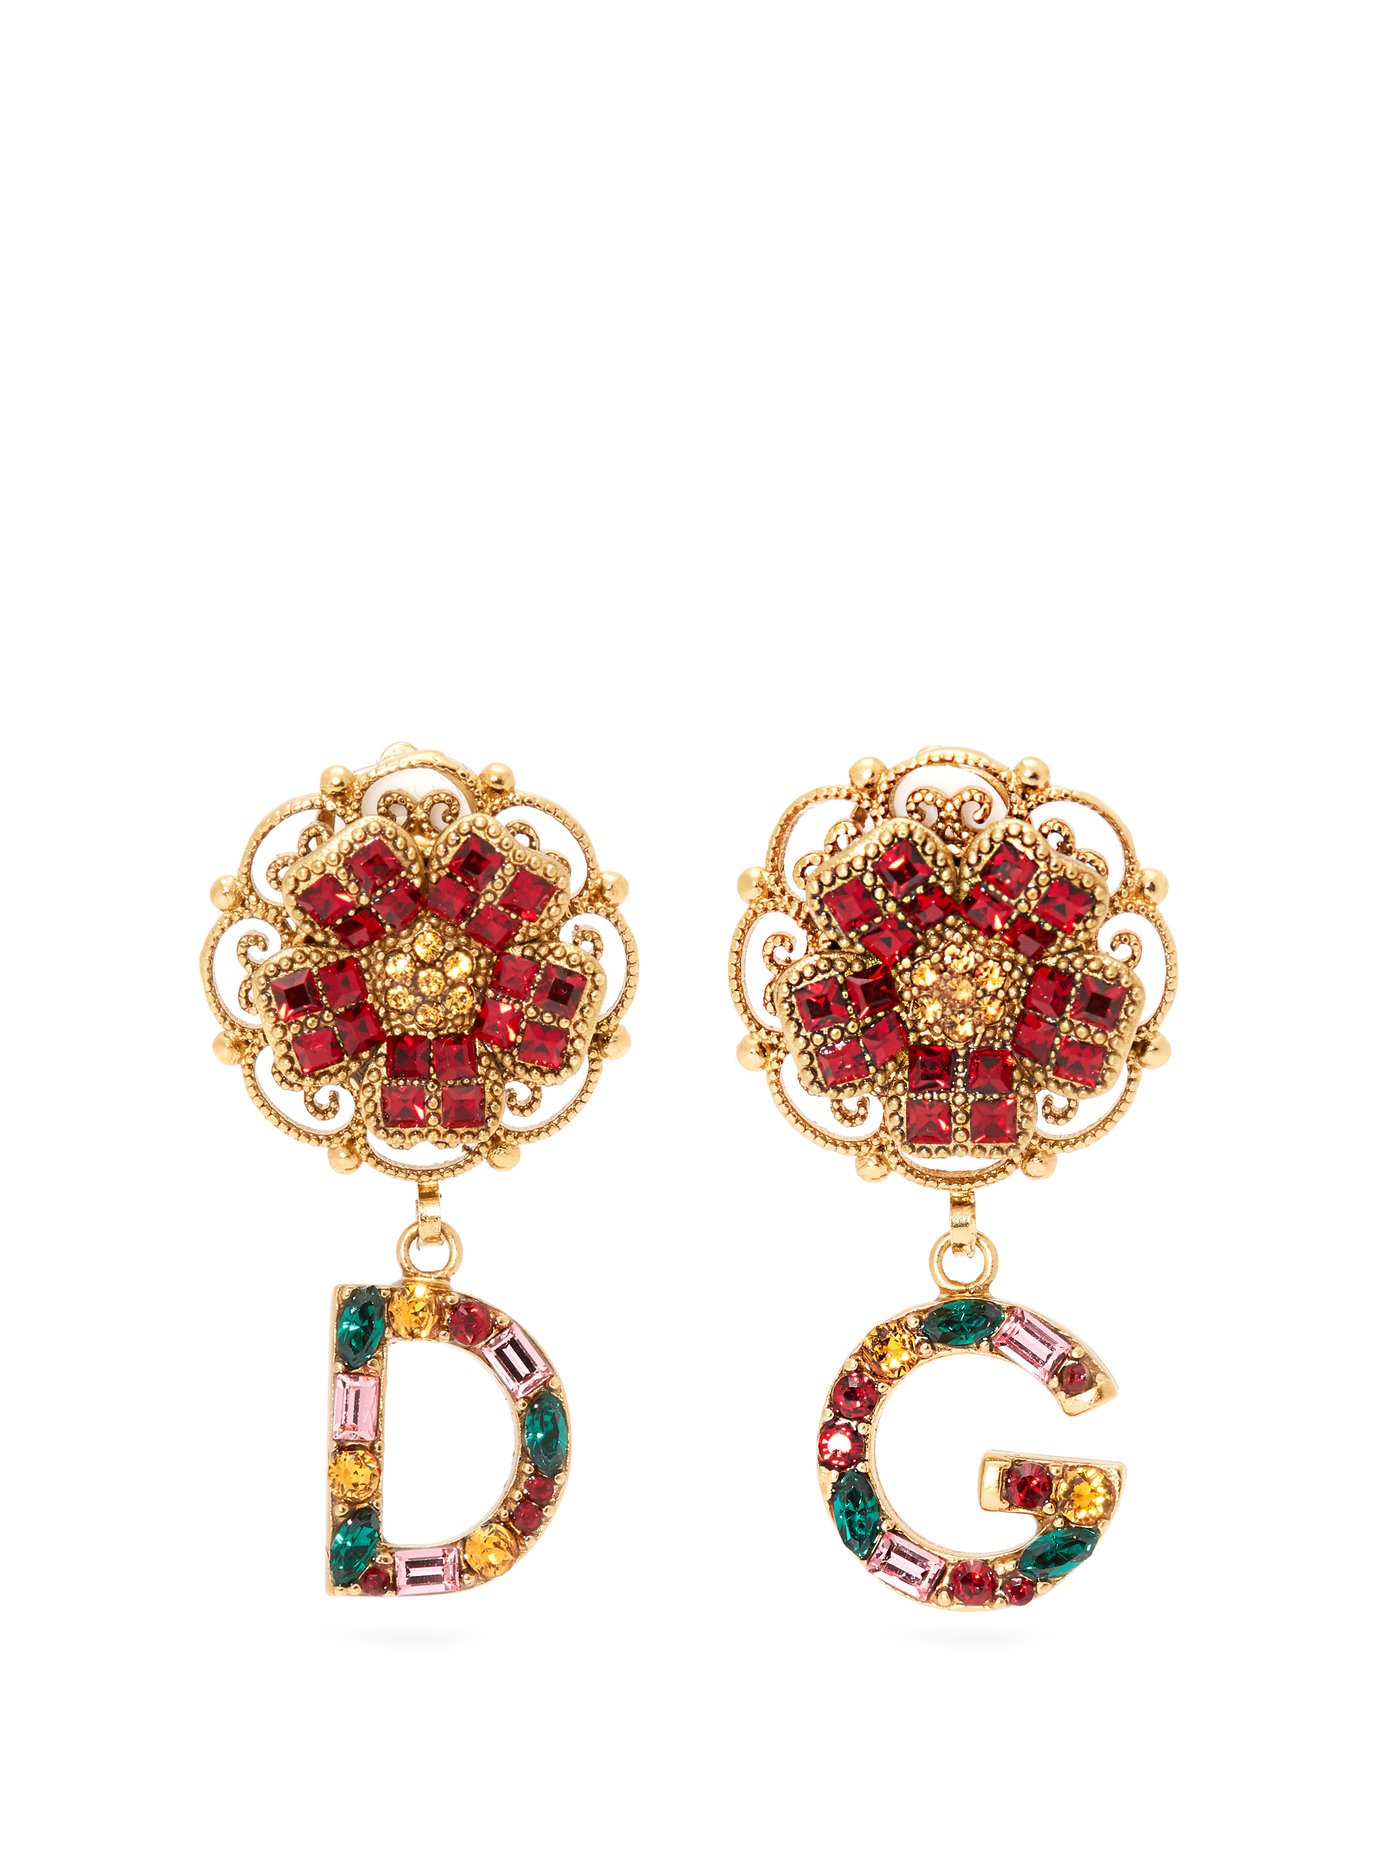 d&g earrings sale